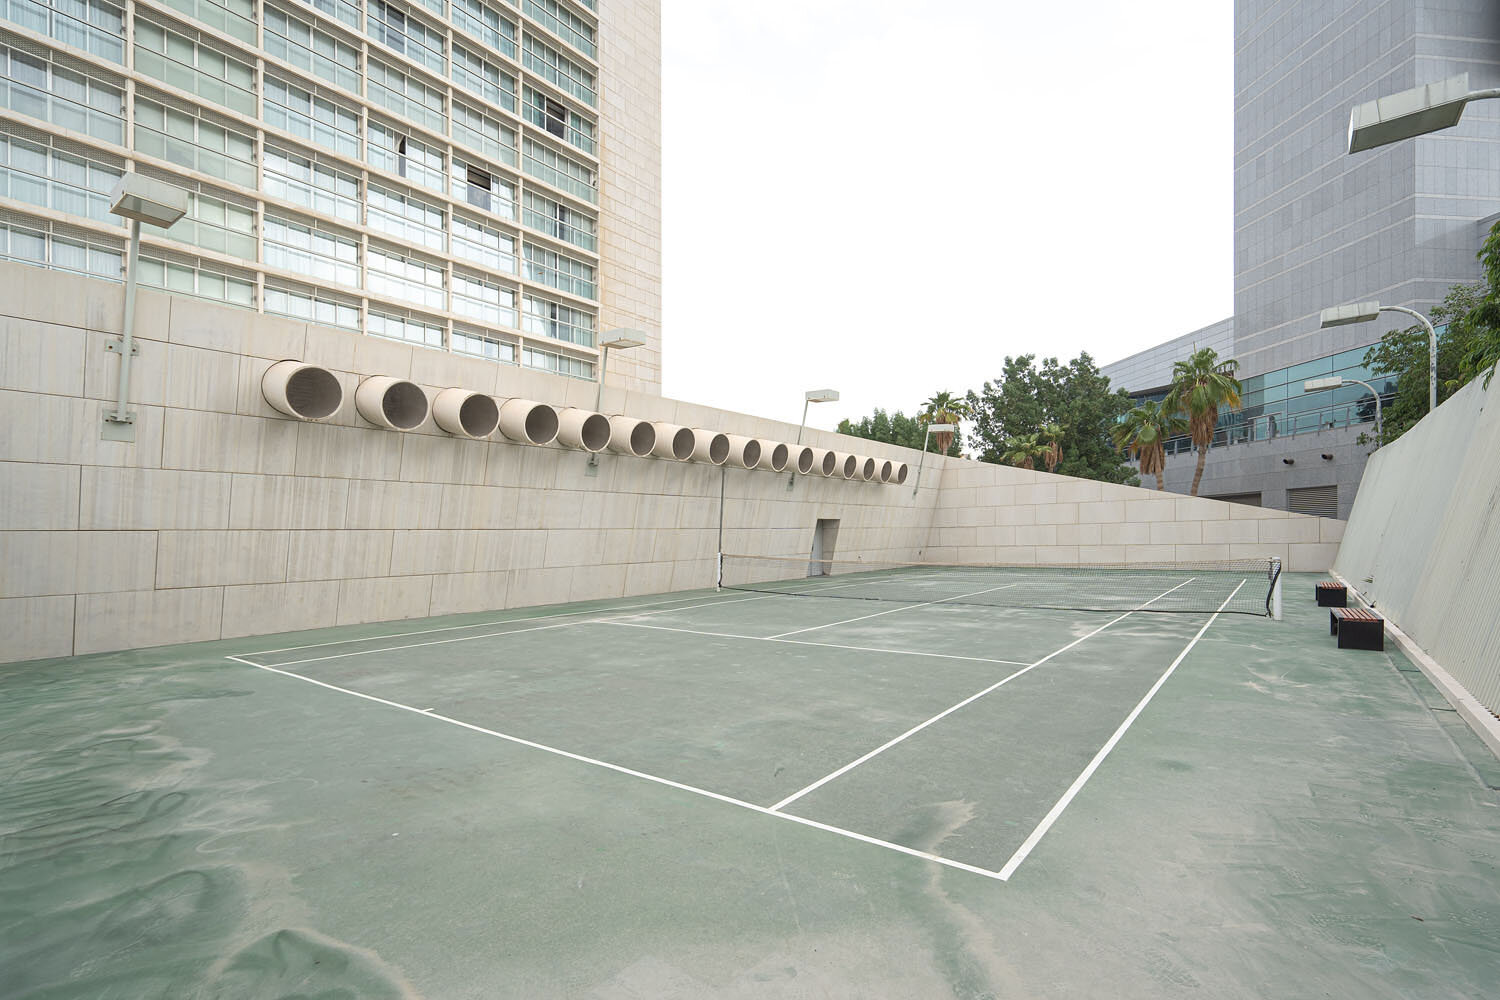  Tennis court 